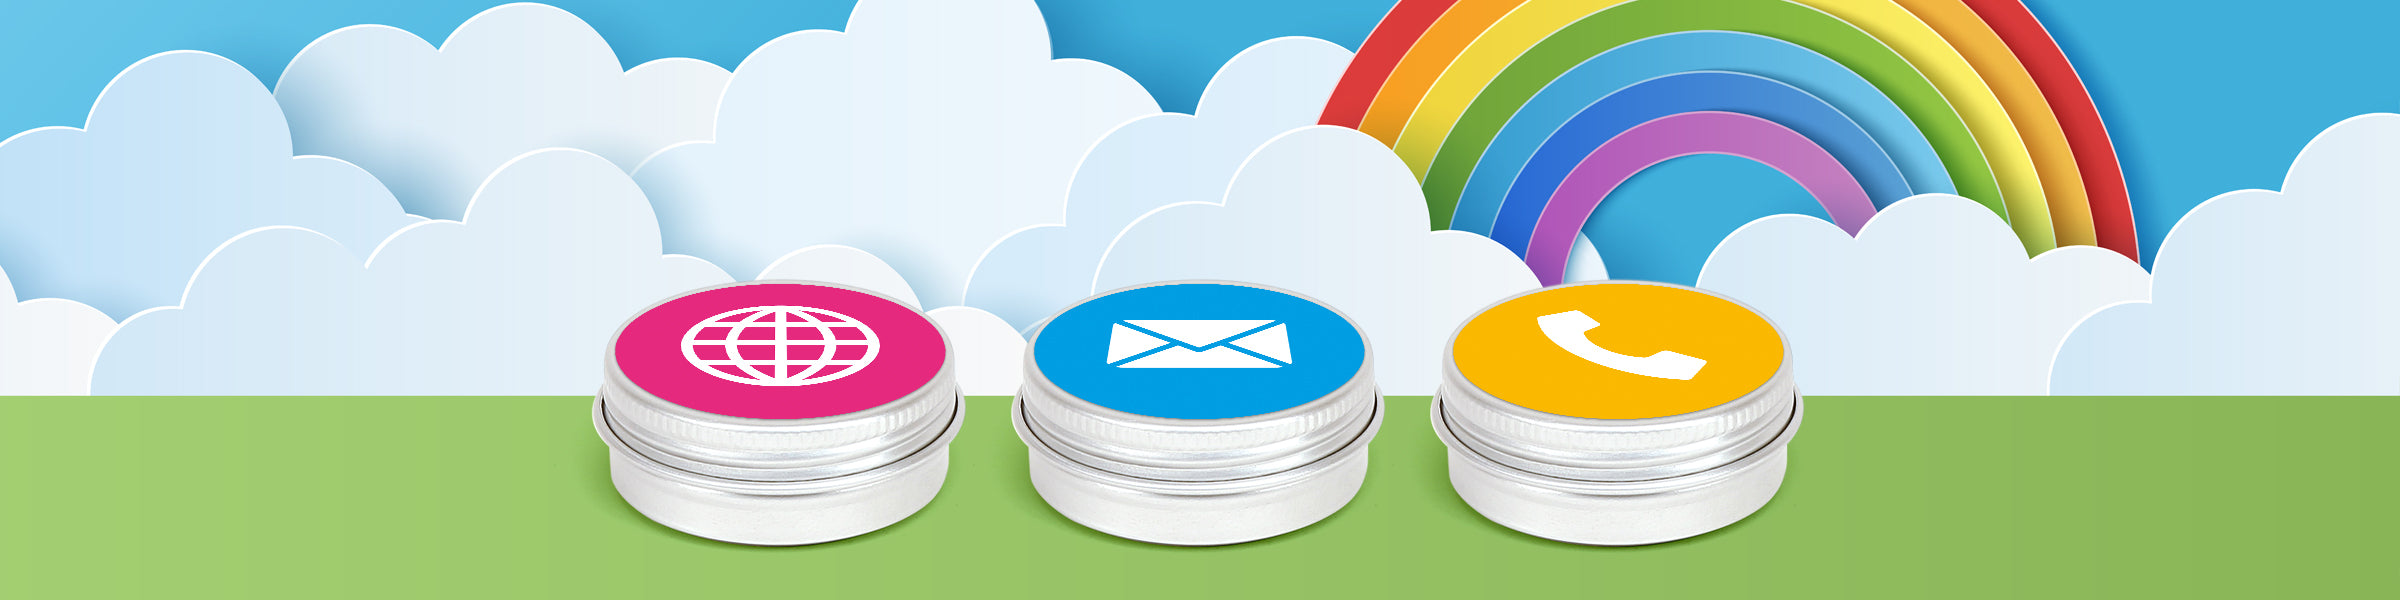 Tres latas de tapa de rosca de aluminio plateado con etiquetas que tienen iconos para el sitio web, el correo electrónico y el teléfono, sentadas sobre un fondo de nubes y un arco iris.